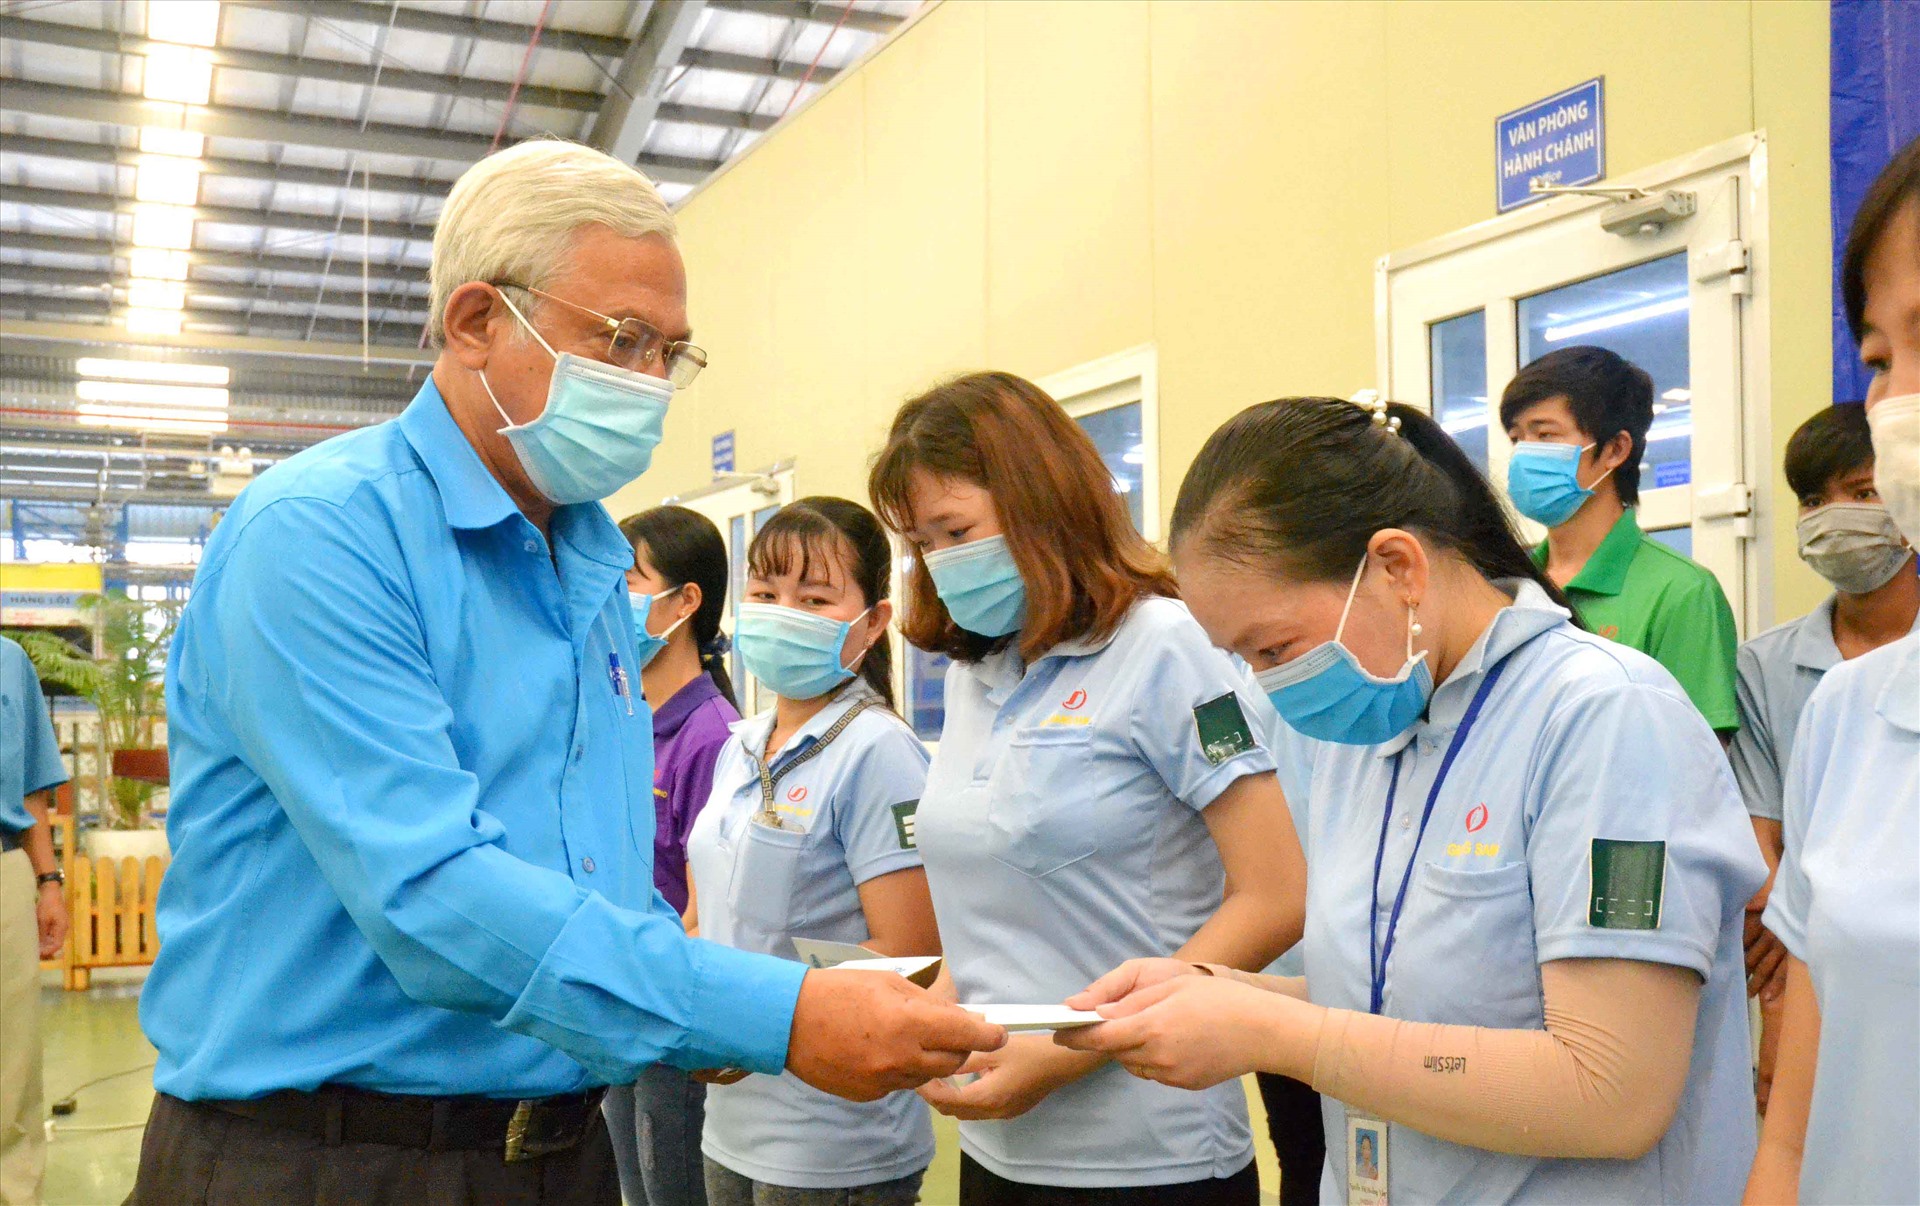 Chủ tịch LĐLĐ tỉnh An Giang Nguyễn Thiện Phú trao hỗ trợ cho đoàn viên gặp khó khăn đang làm việc tại Khu công nghiệp. Ảnh: Lâm Điền